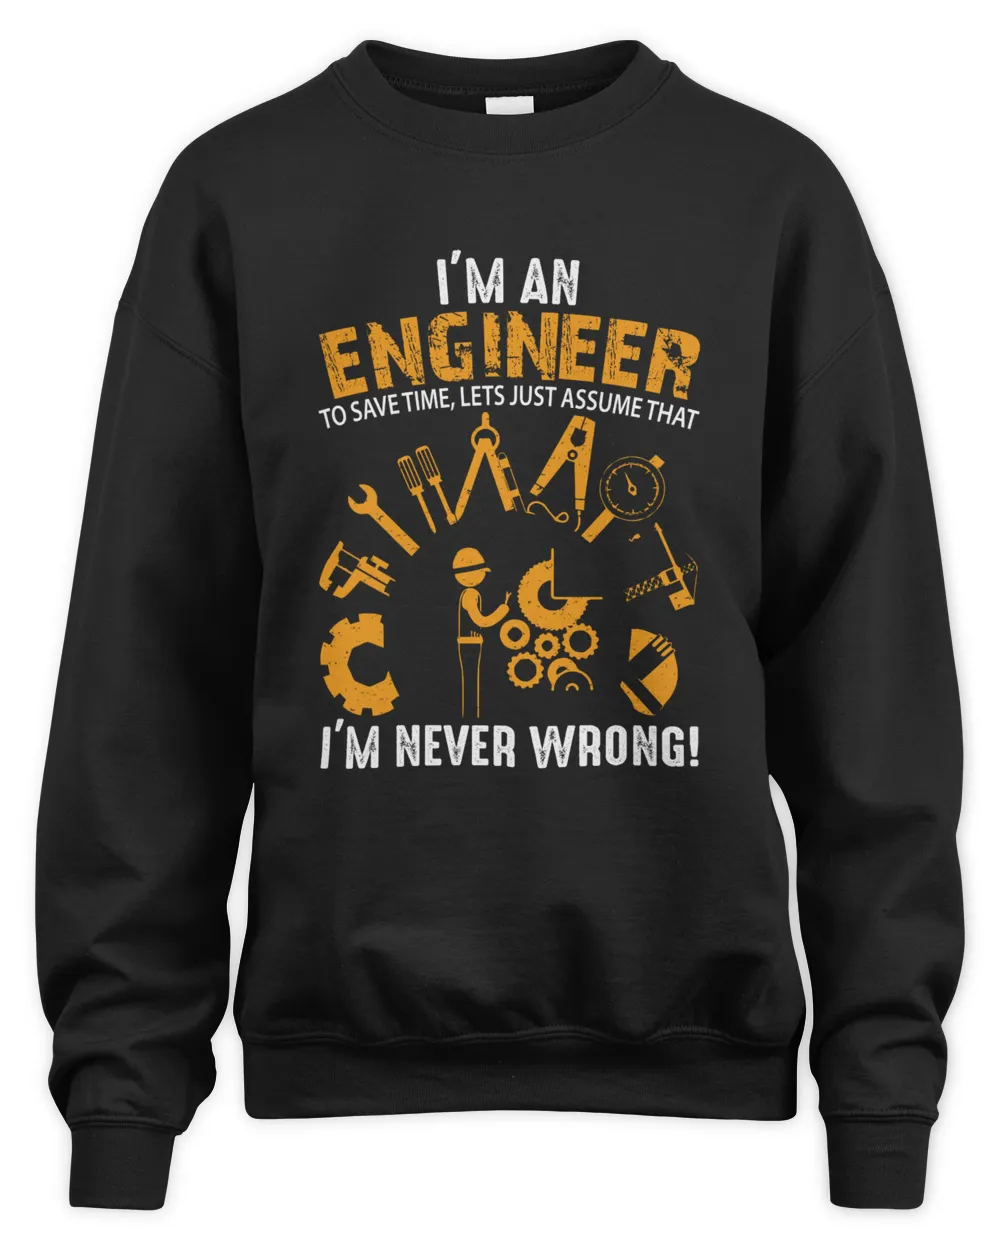 I AM AN ENGINEER - PD01